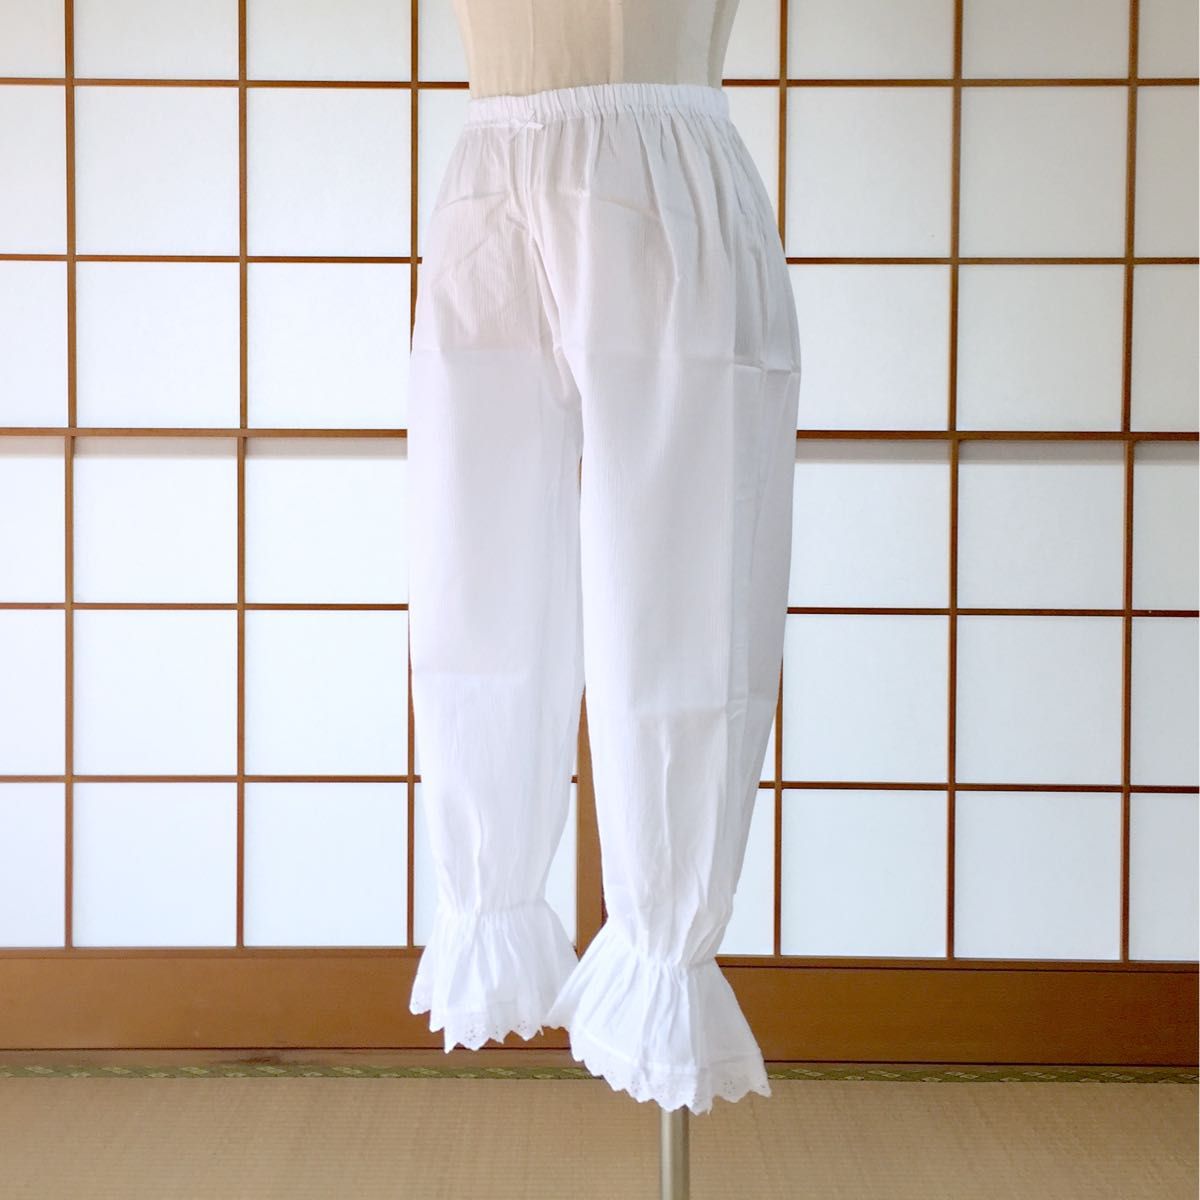 【新品】着物ペチパンツ パンツ型 裾よけ LLサイズ 着物下着 日本製 kimonolove